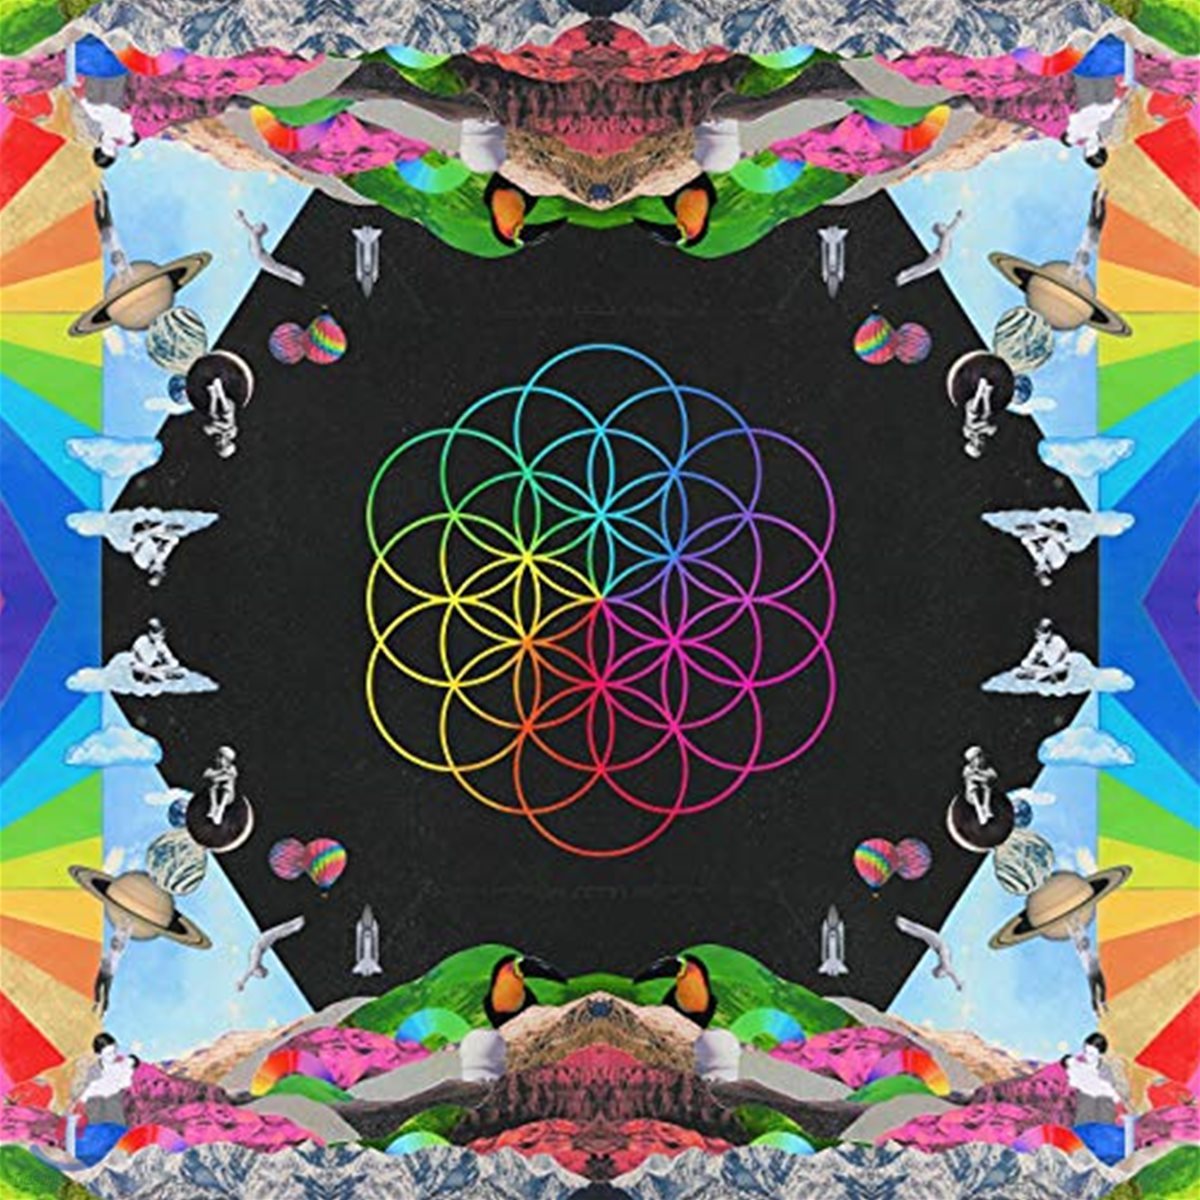 Coldplay - A Head Full Of Dreams 콜드플레이 7집